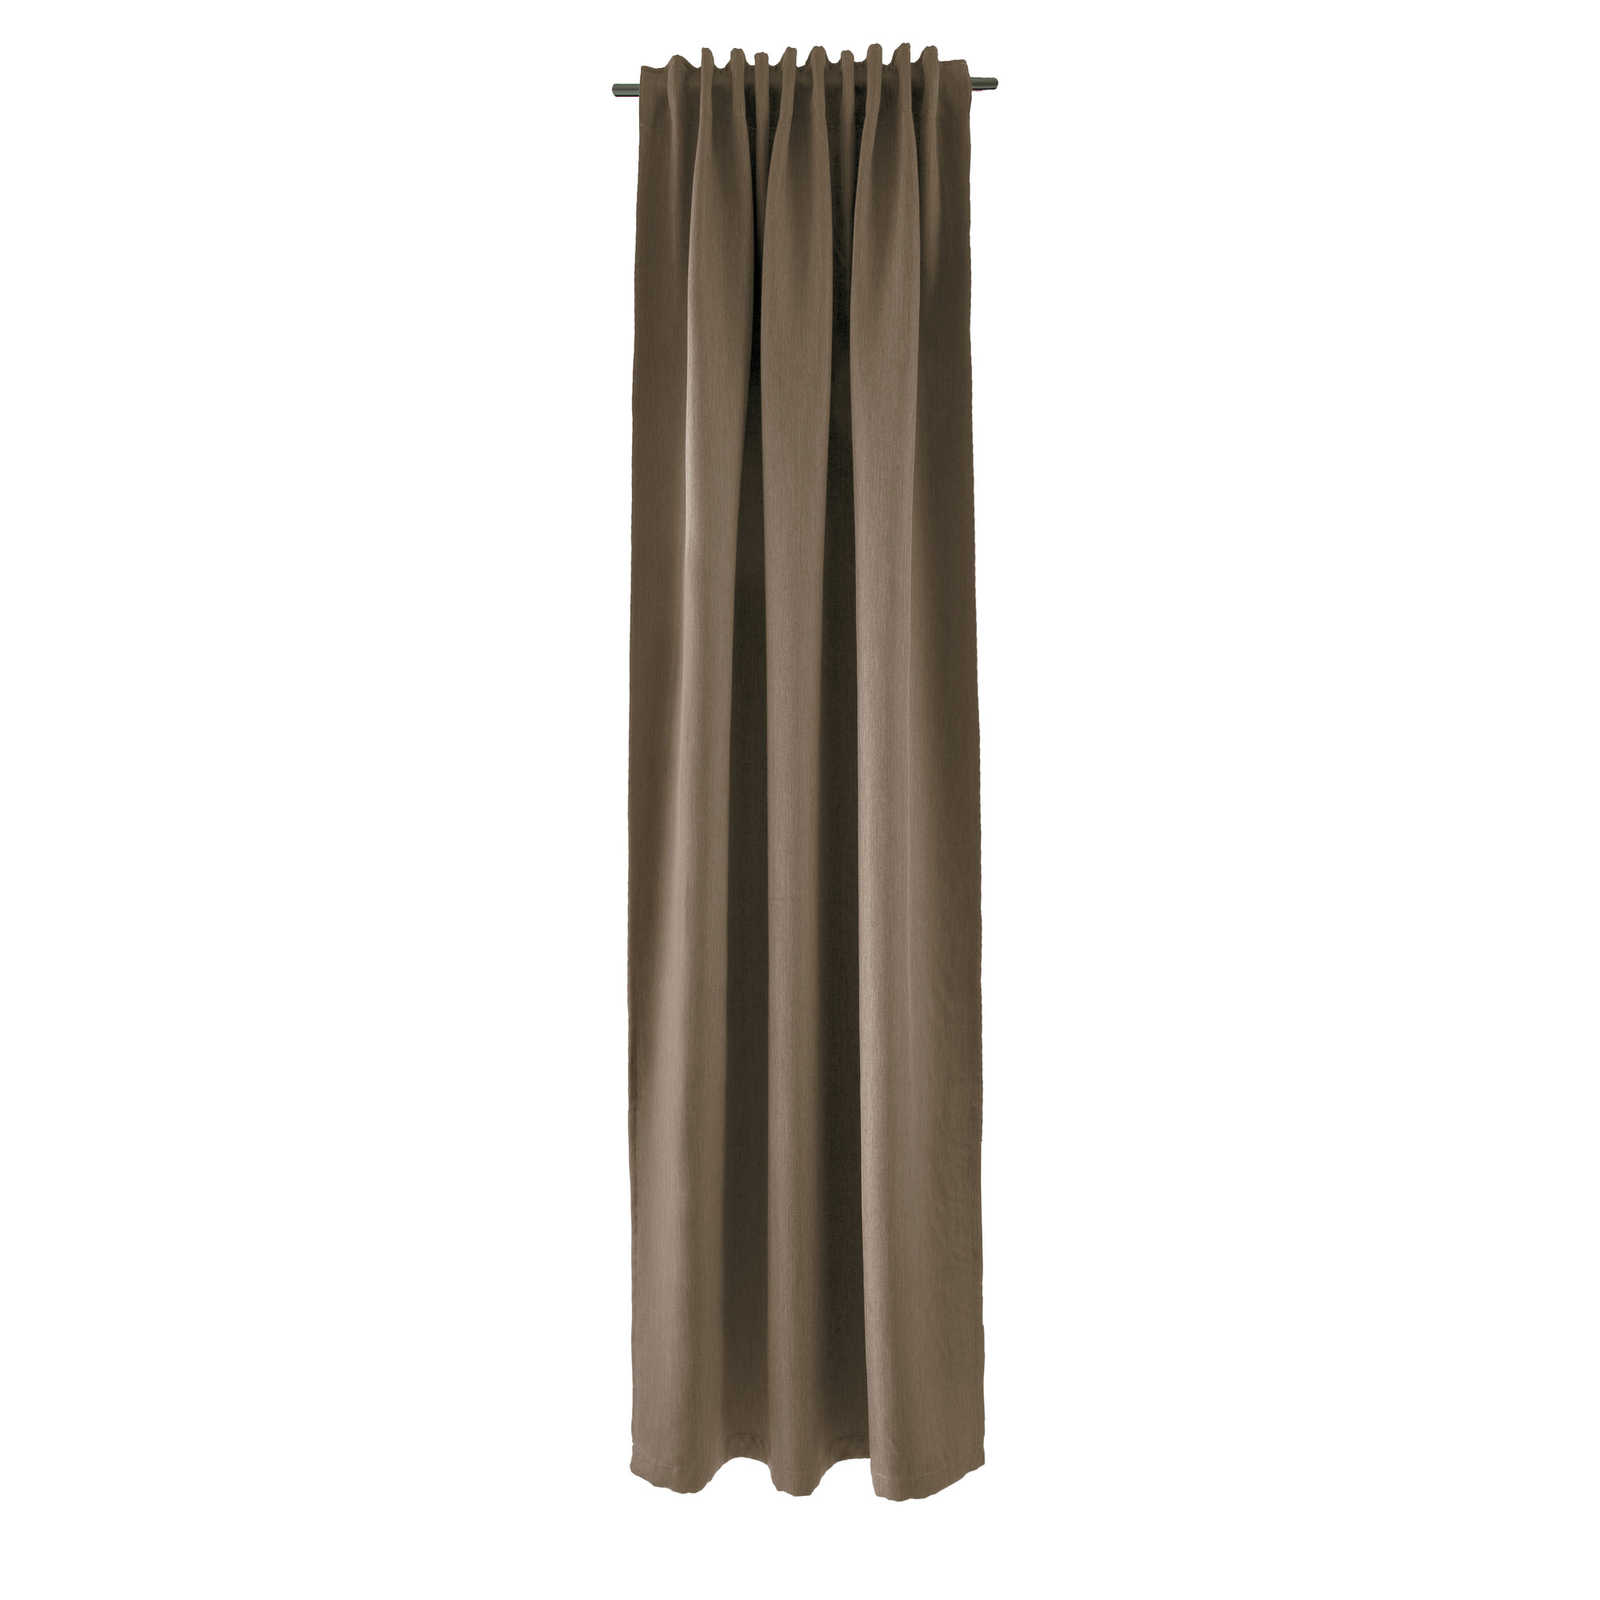 Sciarpa decorativa 140 cm x 245 cm in fibra artificiale marrone
